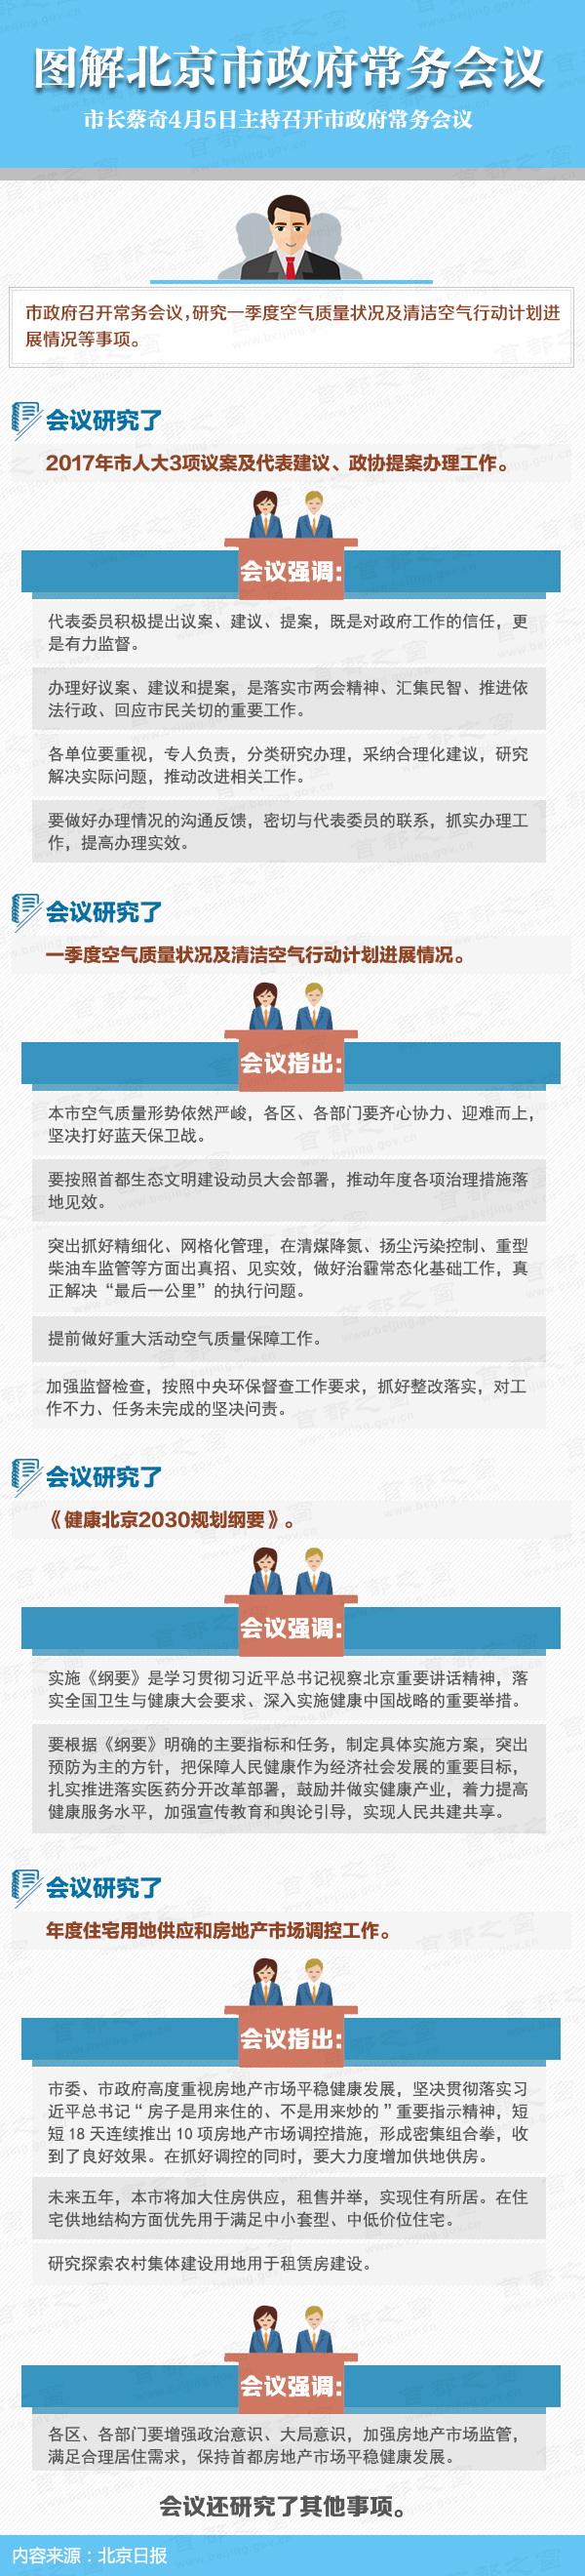 圖解2017年4月5日北京市政府常務會議